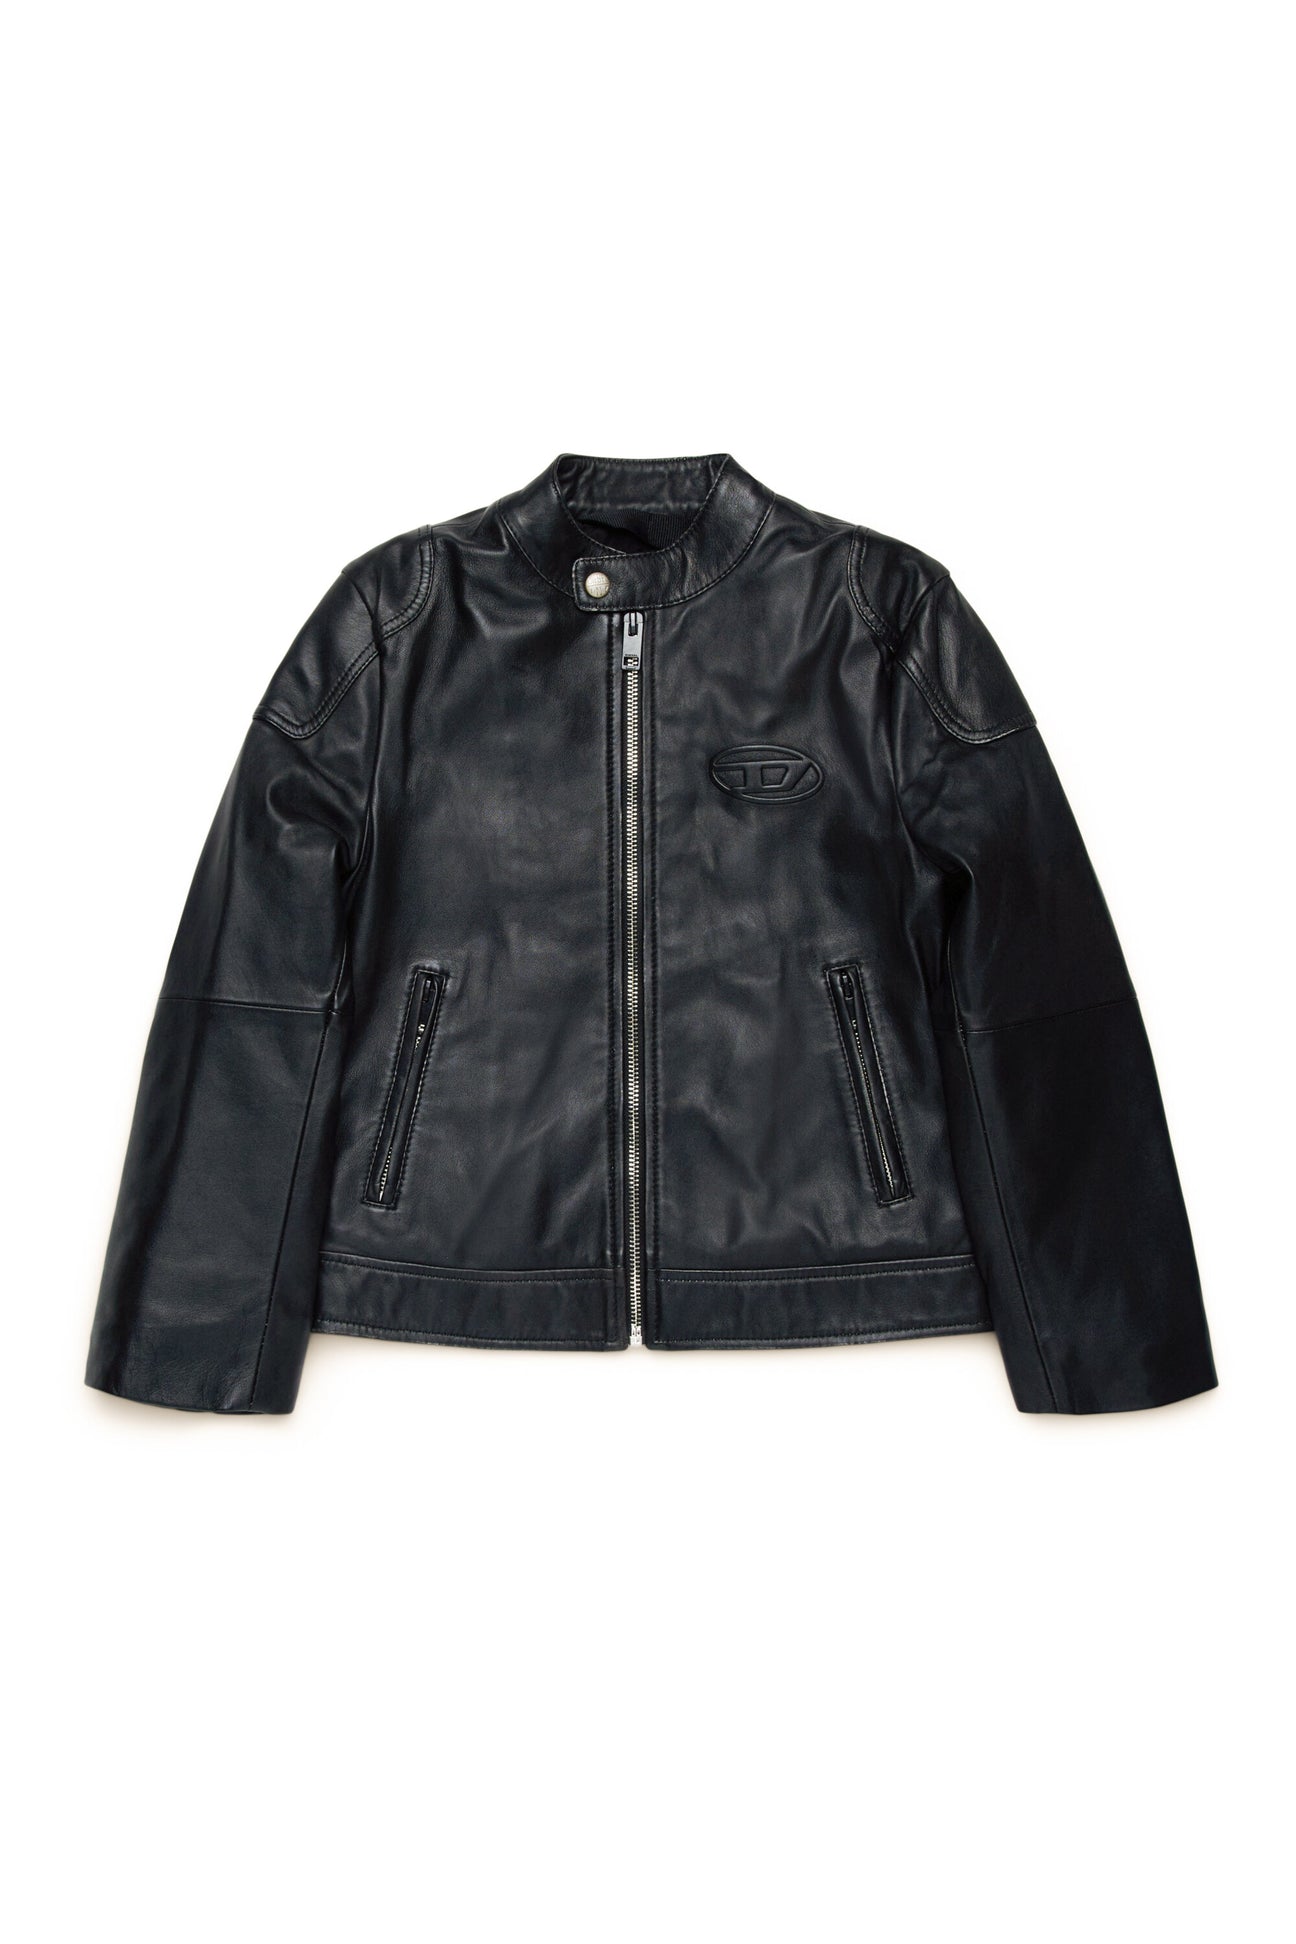 Oval D branded leather biker jacket Oval D branded leather biker jacket